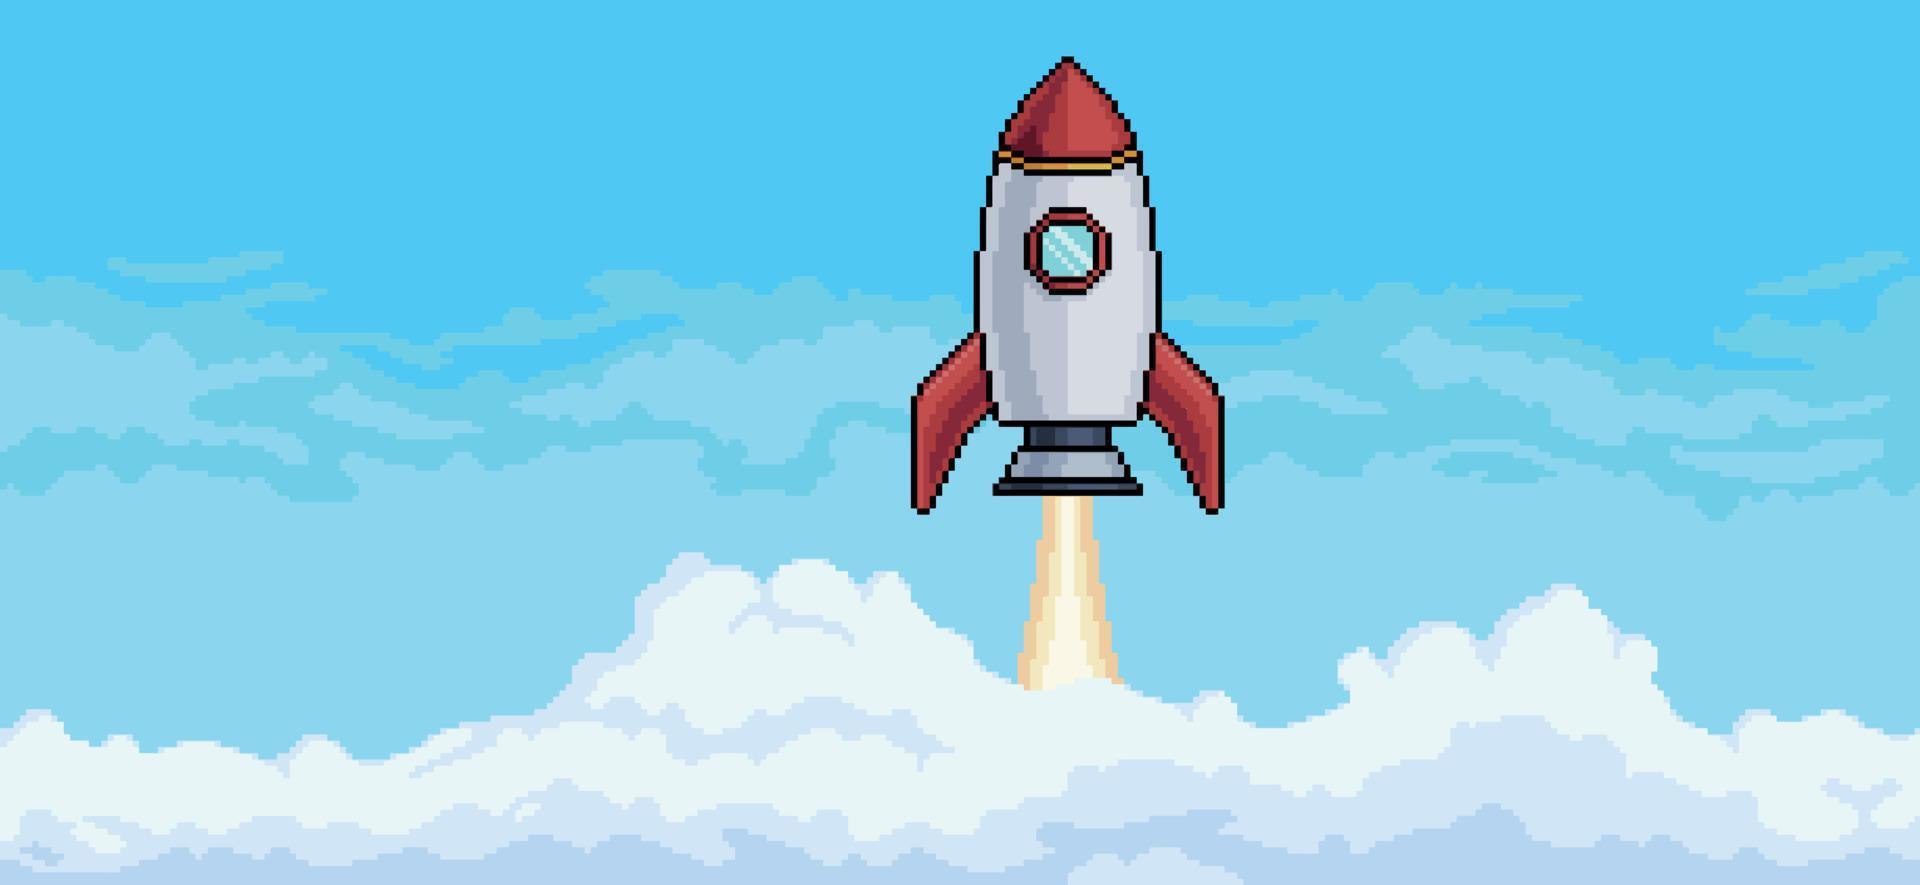 pixel art céu azul com nuvens e vetor de fundo voador de foguete para jogo de 8 bits